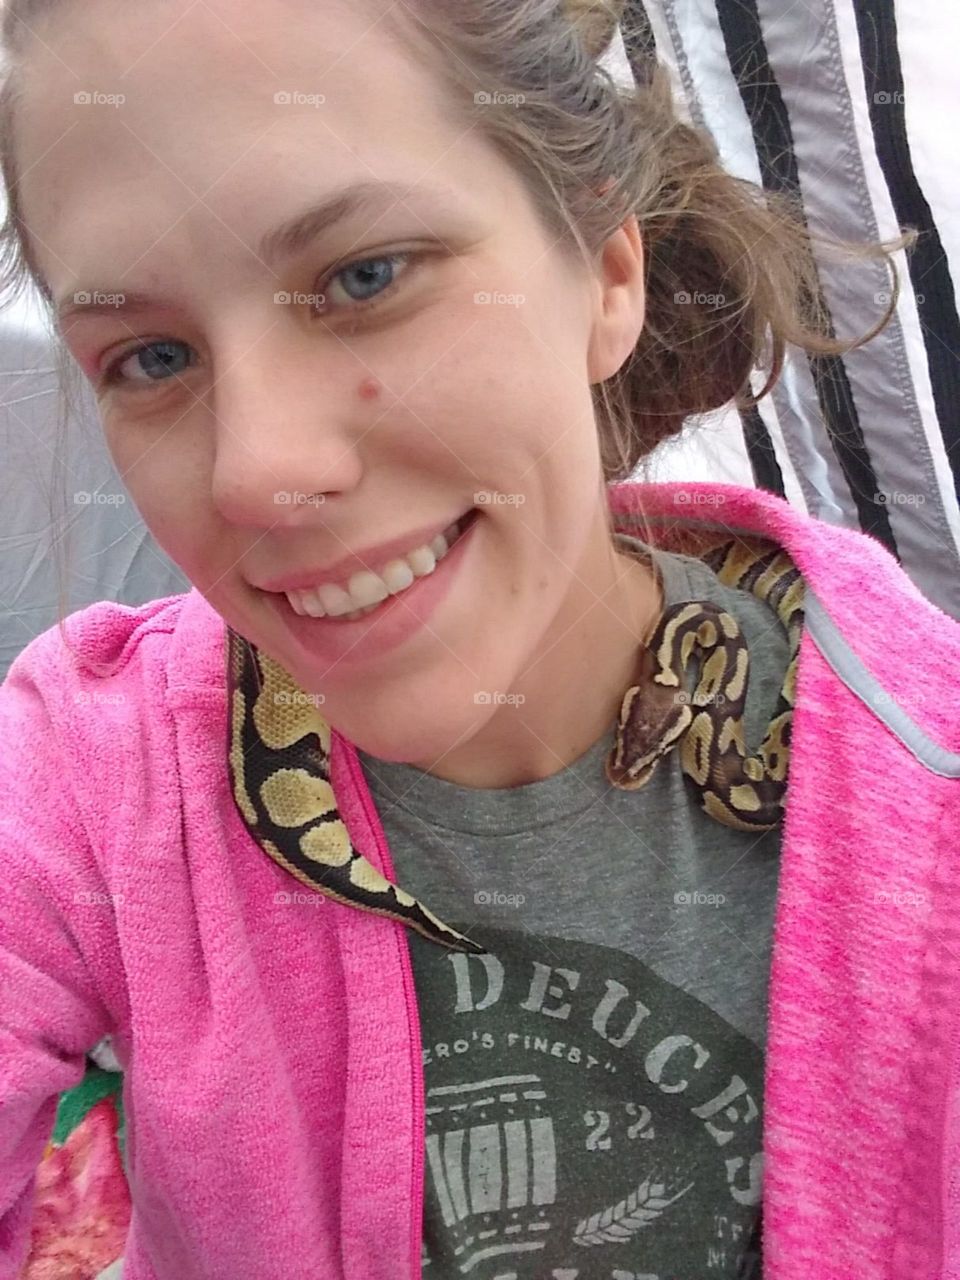 my snake, Scarlett and I